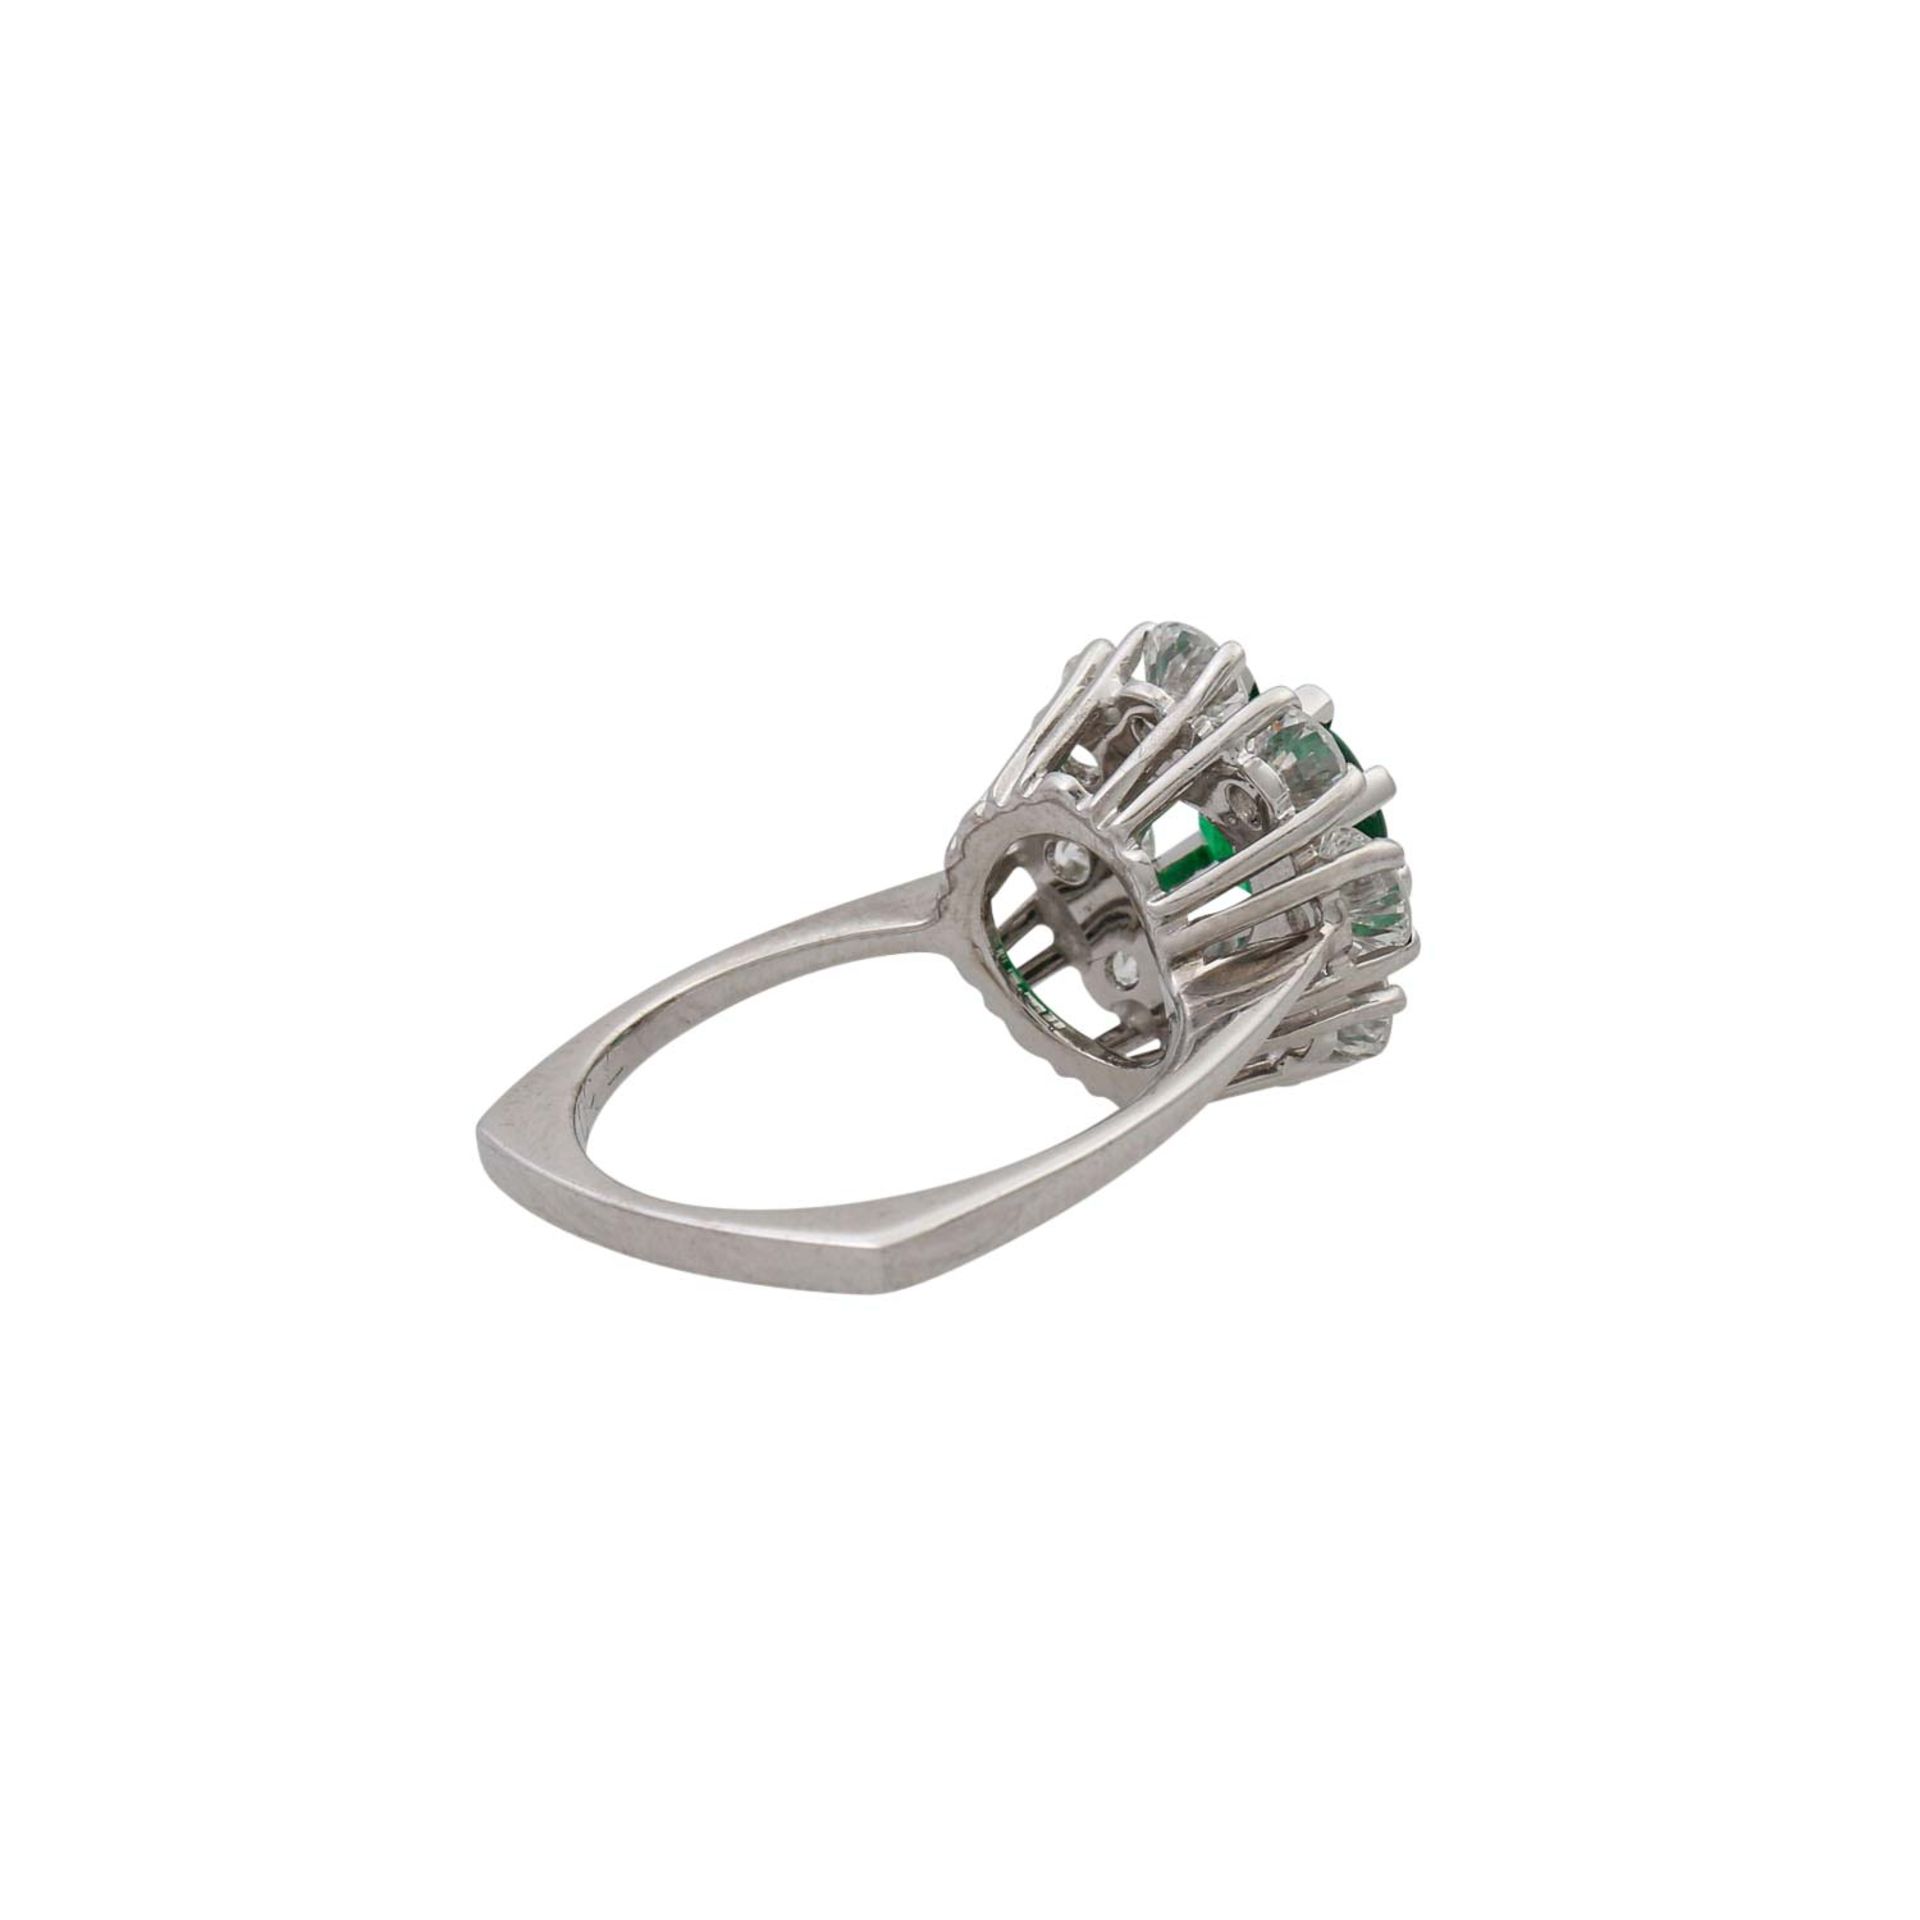 Ring mit Smaragddoublette und Brillanten von zus. ca. 1,5 ct, - Bild 3 aus 5